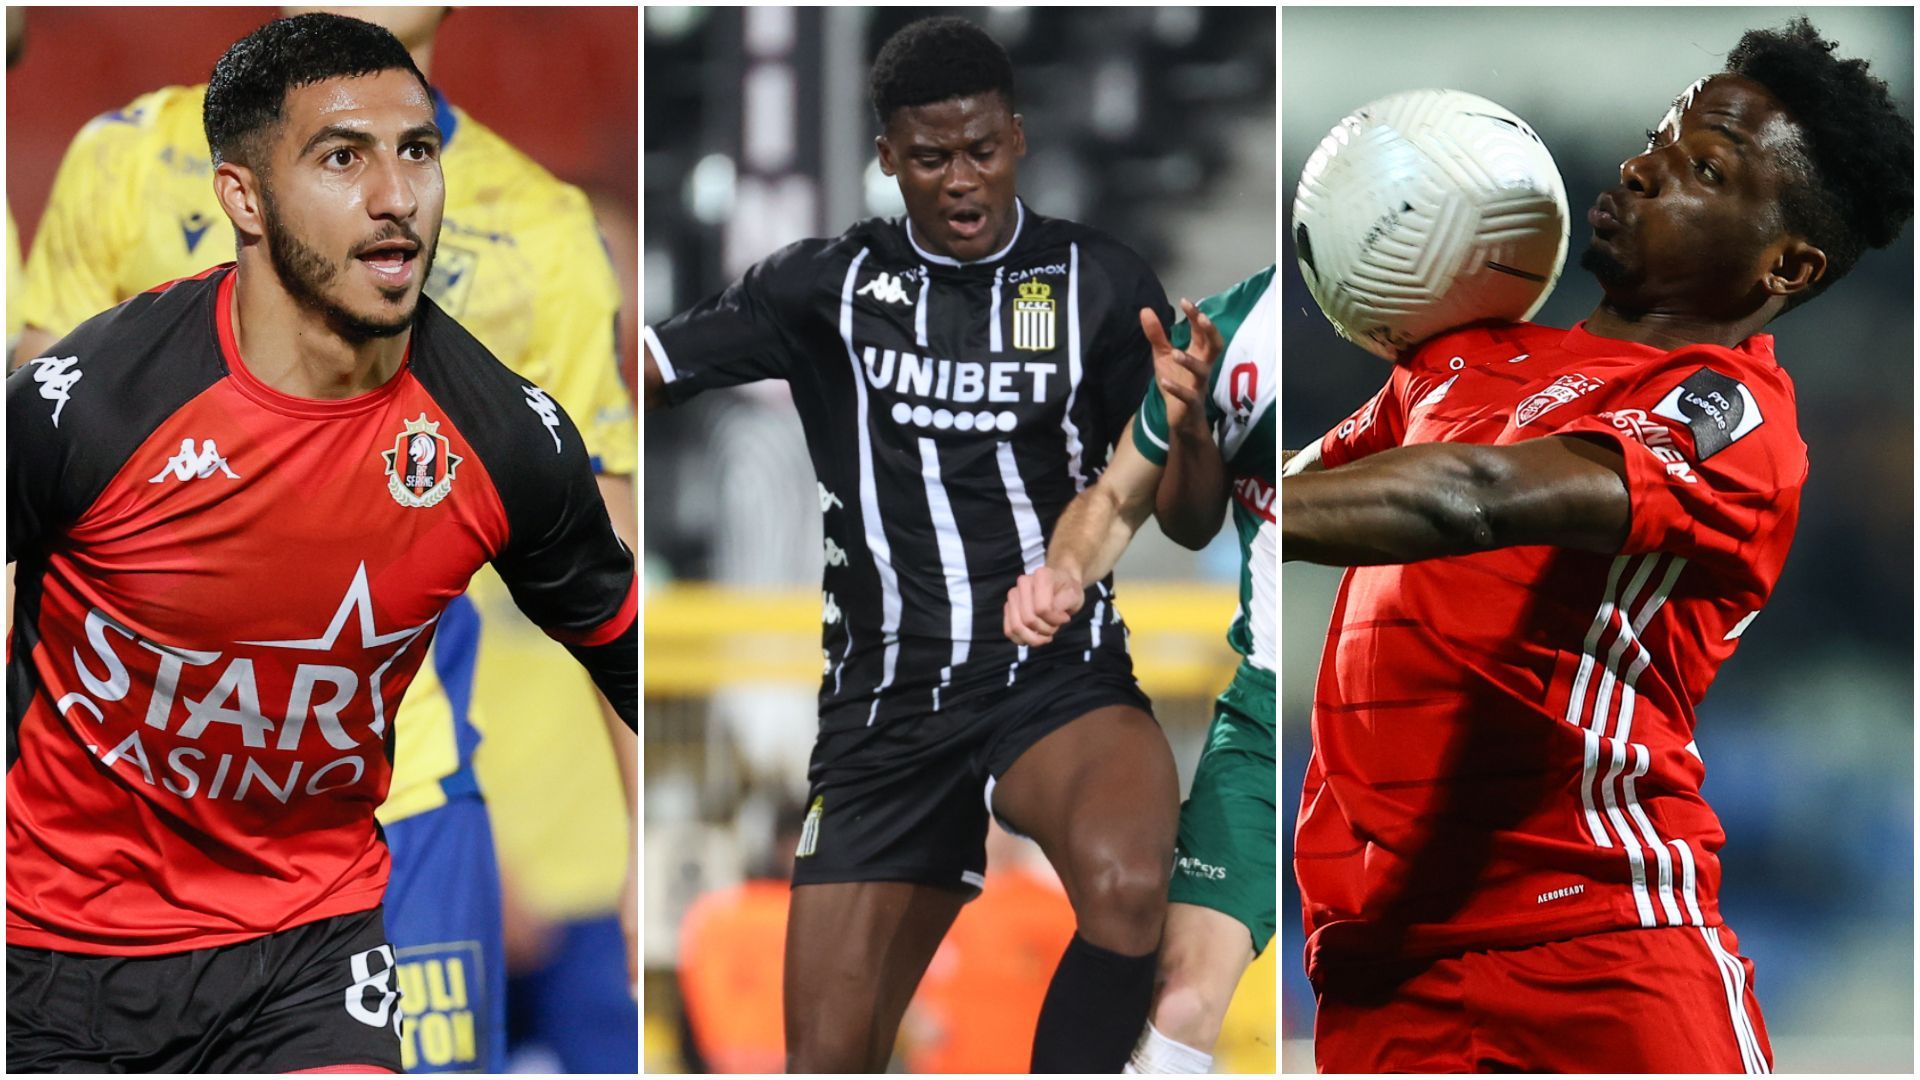 Coupe de Belgique : Seraing, Charleroi et Eupen engagés ce mercredi soir